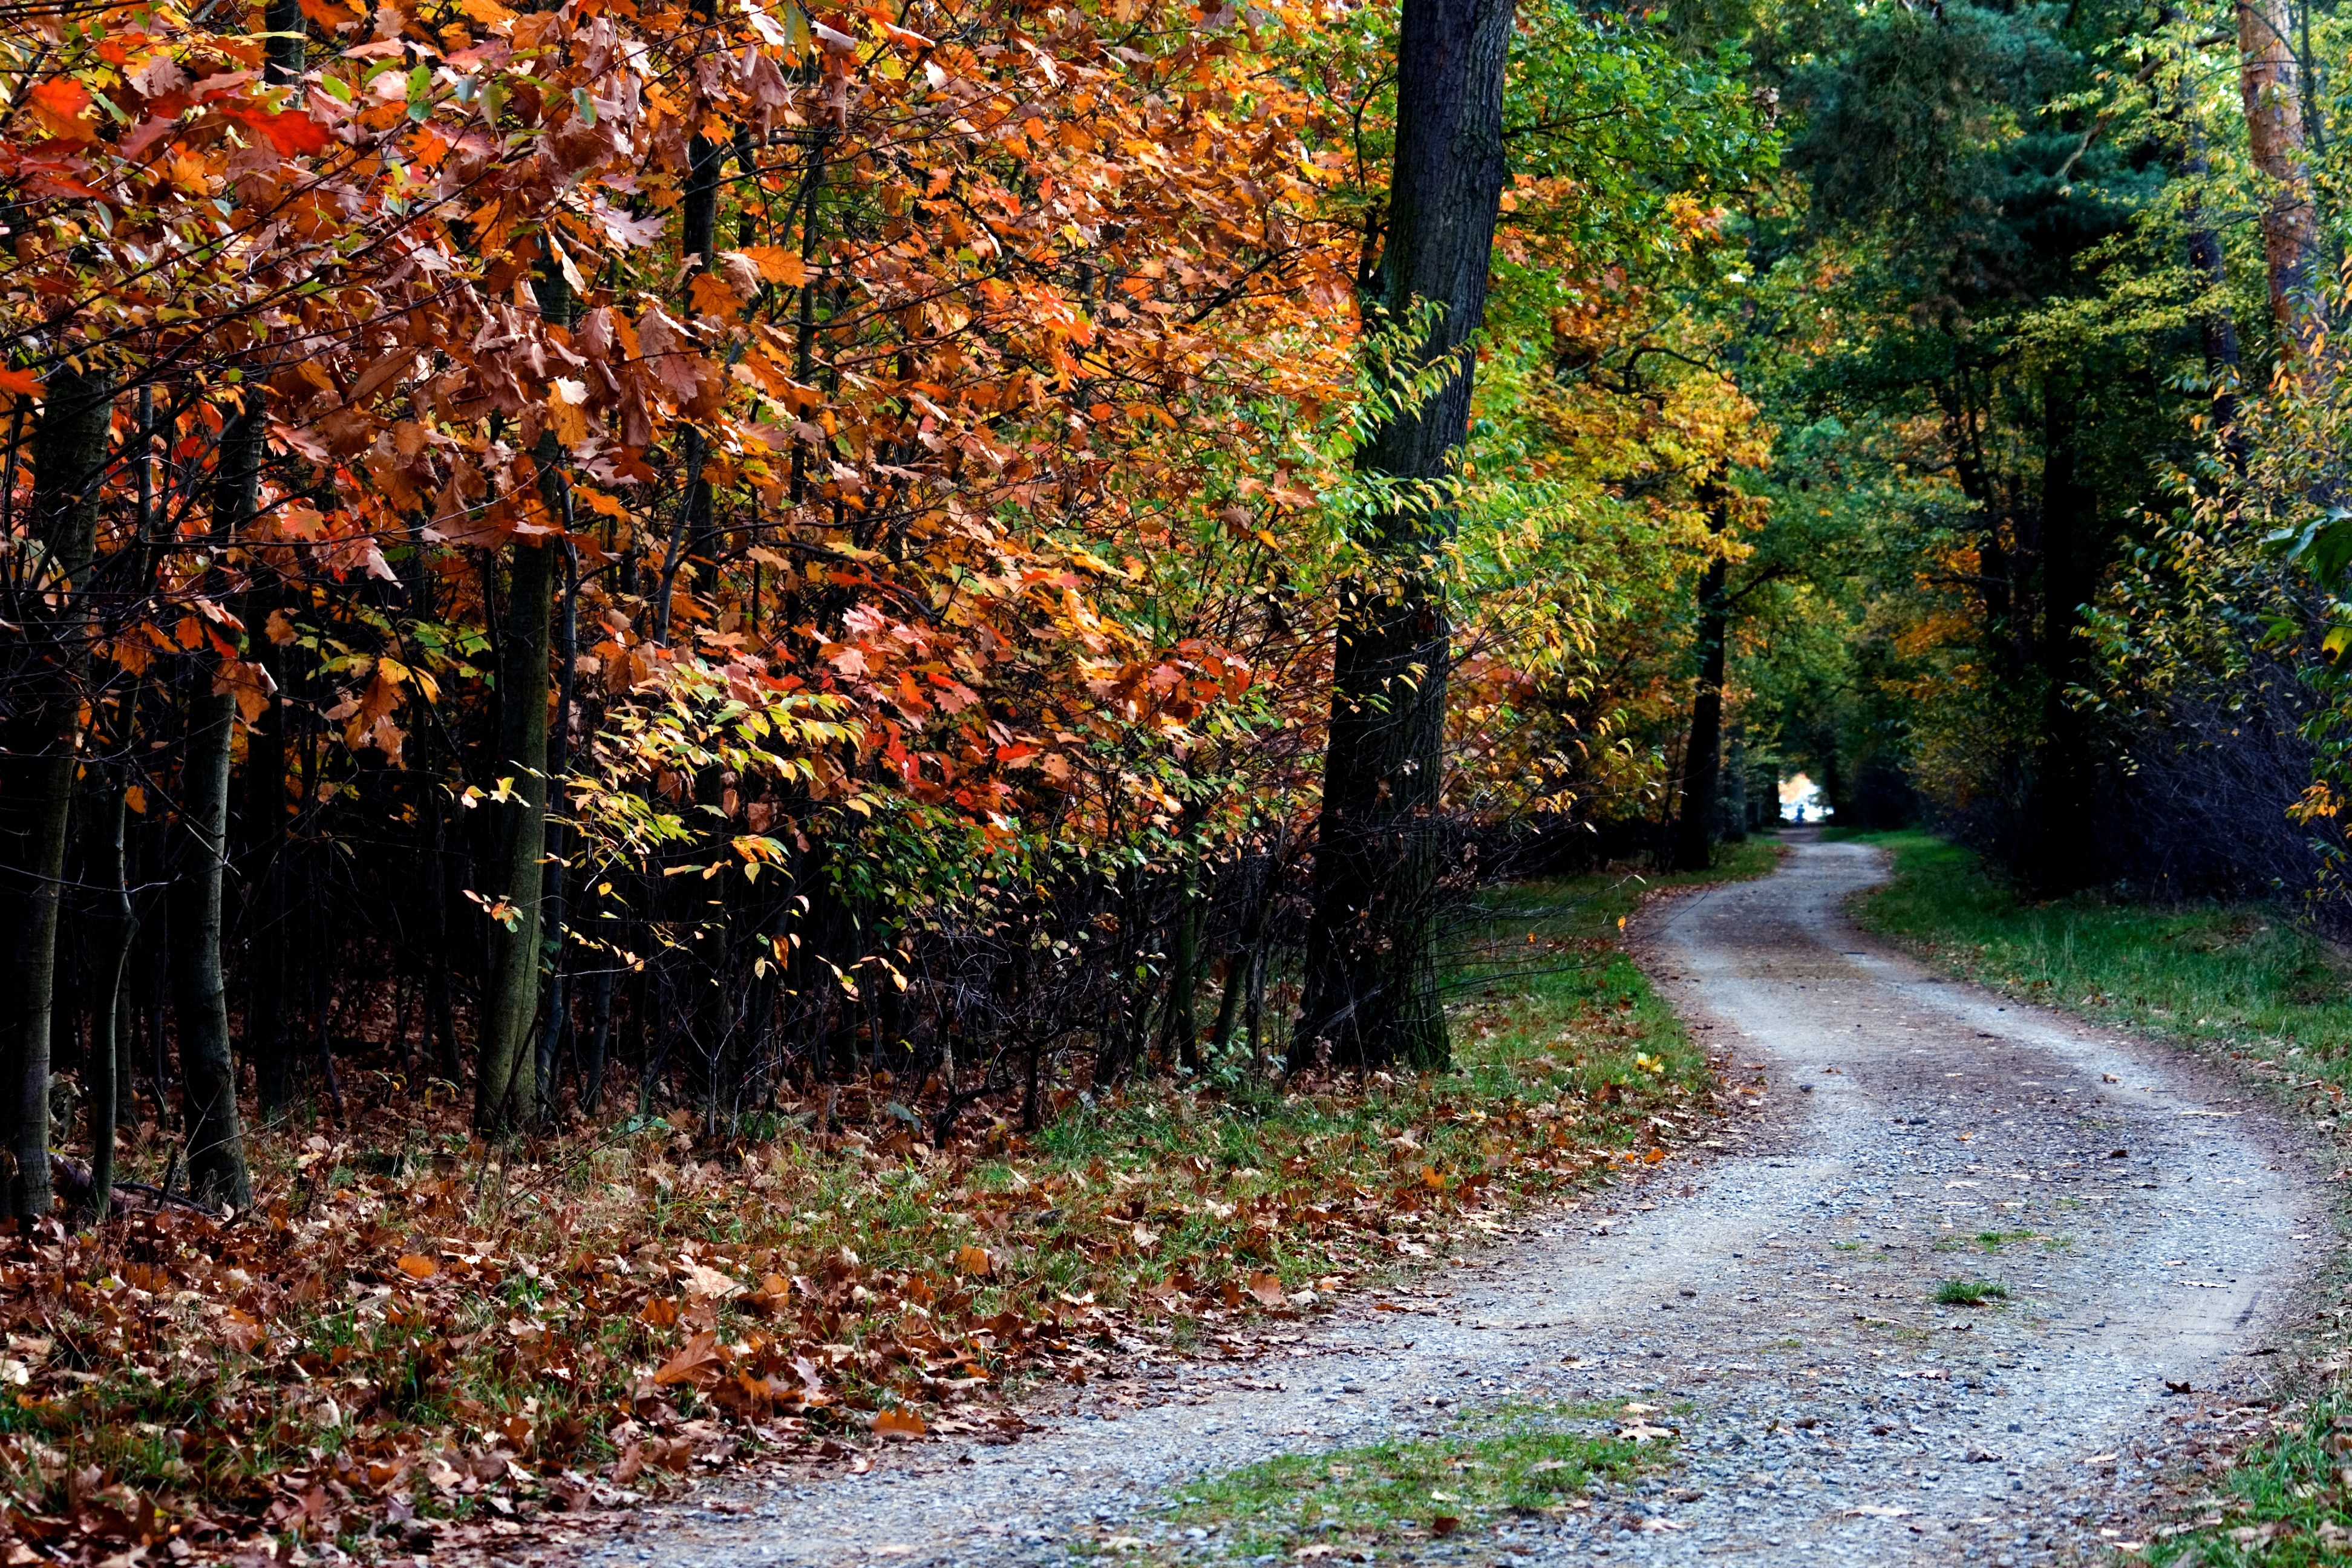 Autumn nature, trees, path, foliage Free Stock Photos